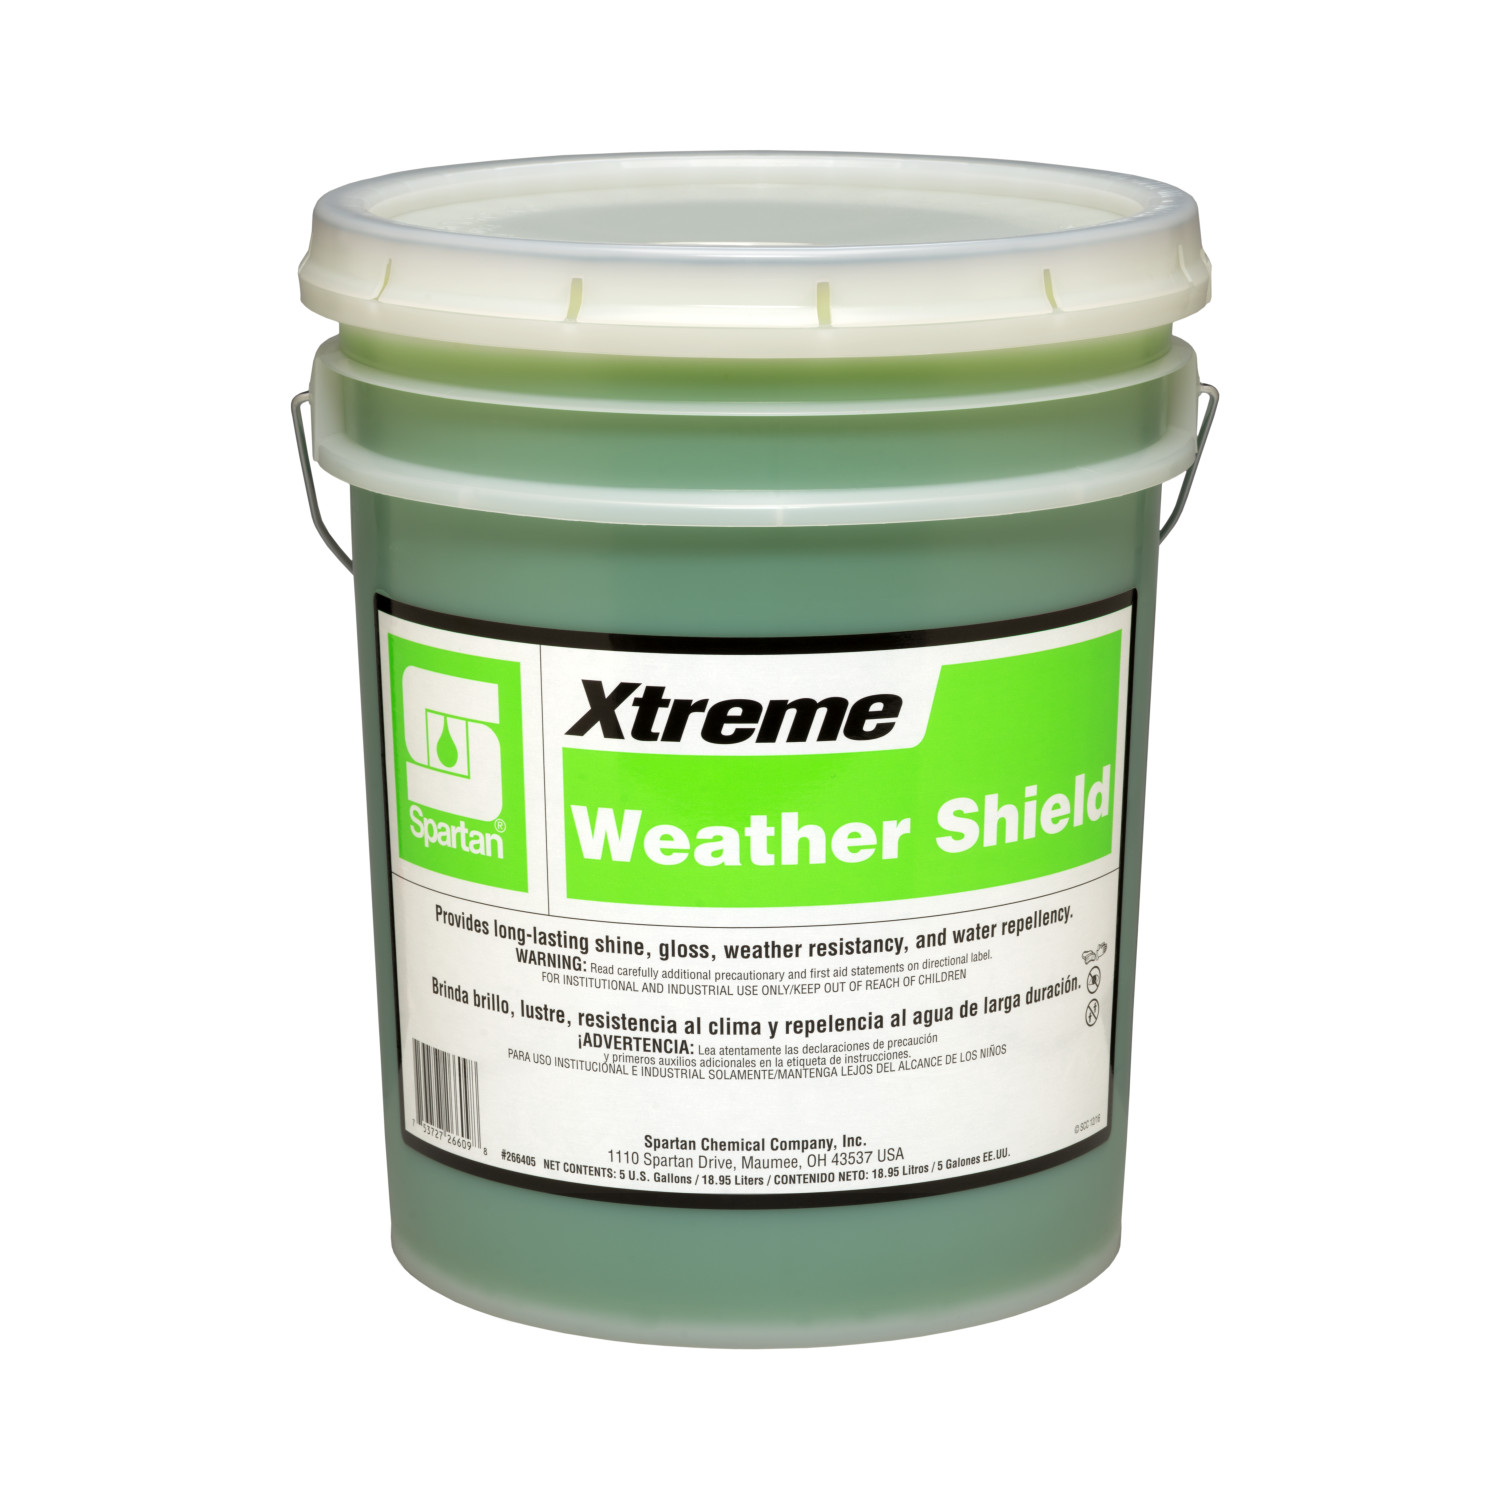 Xtreme® Weather Shield 5 gallon pail